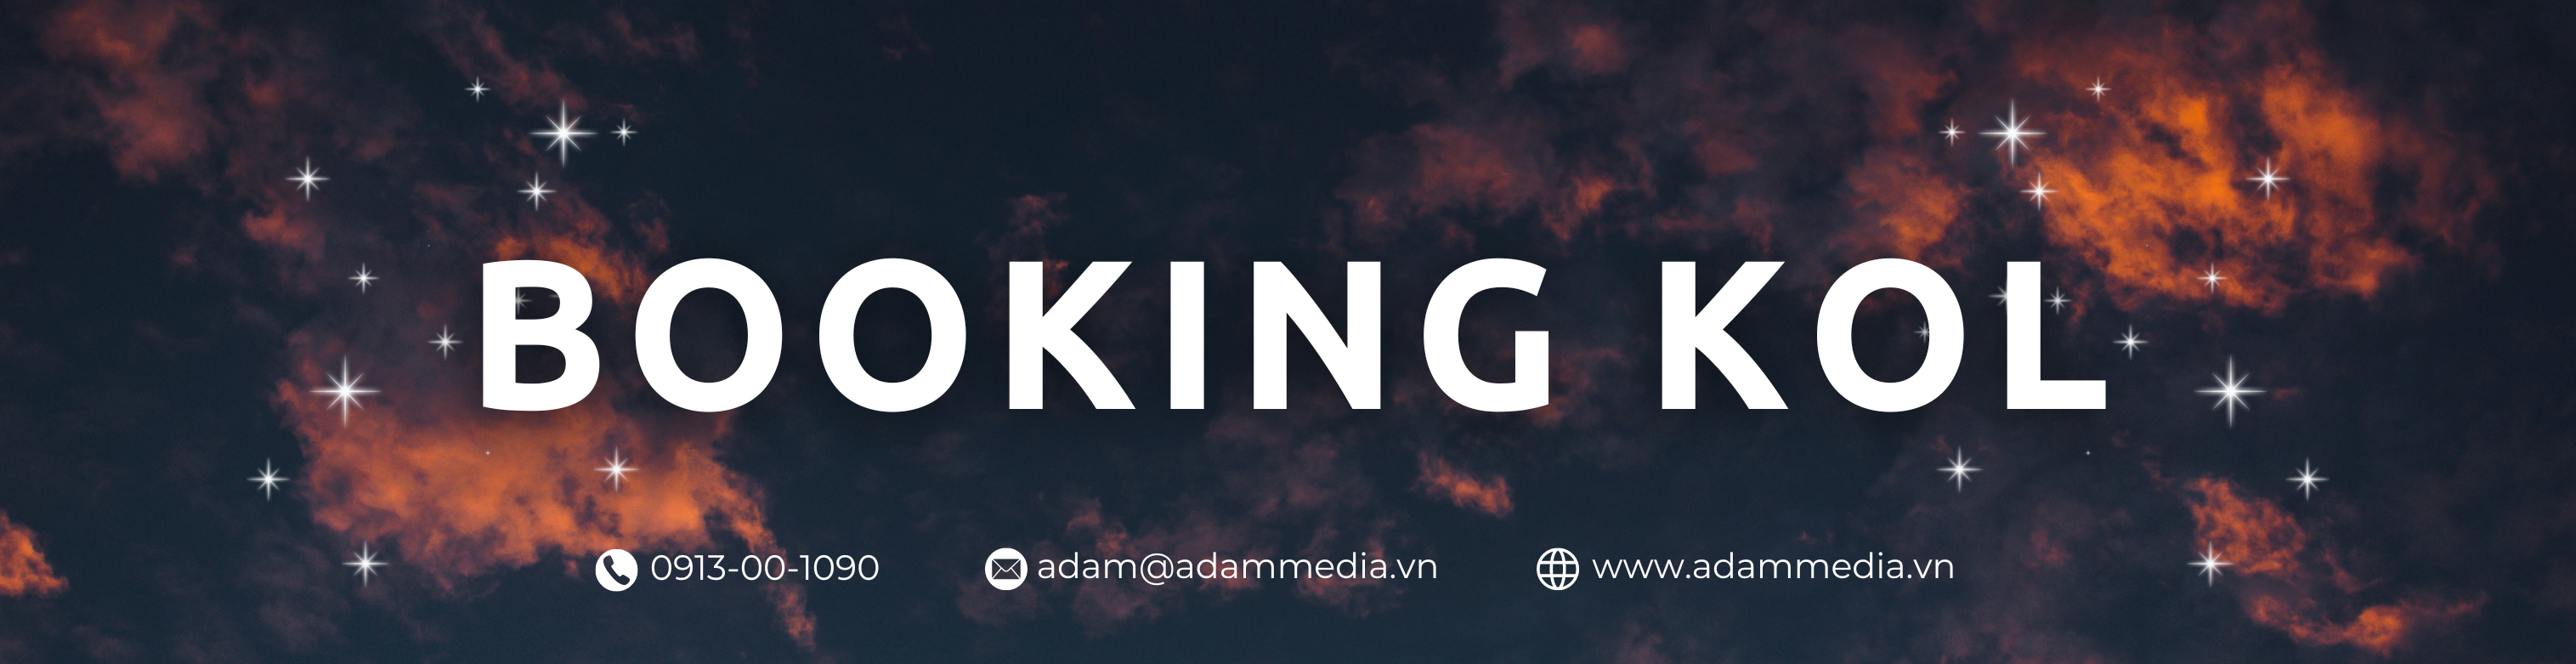 Booking KOL - Người Nổi Tiếng | Adam Media